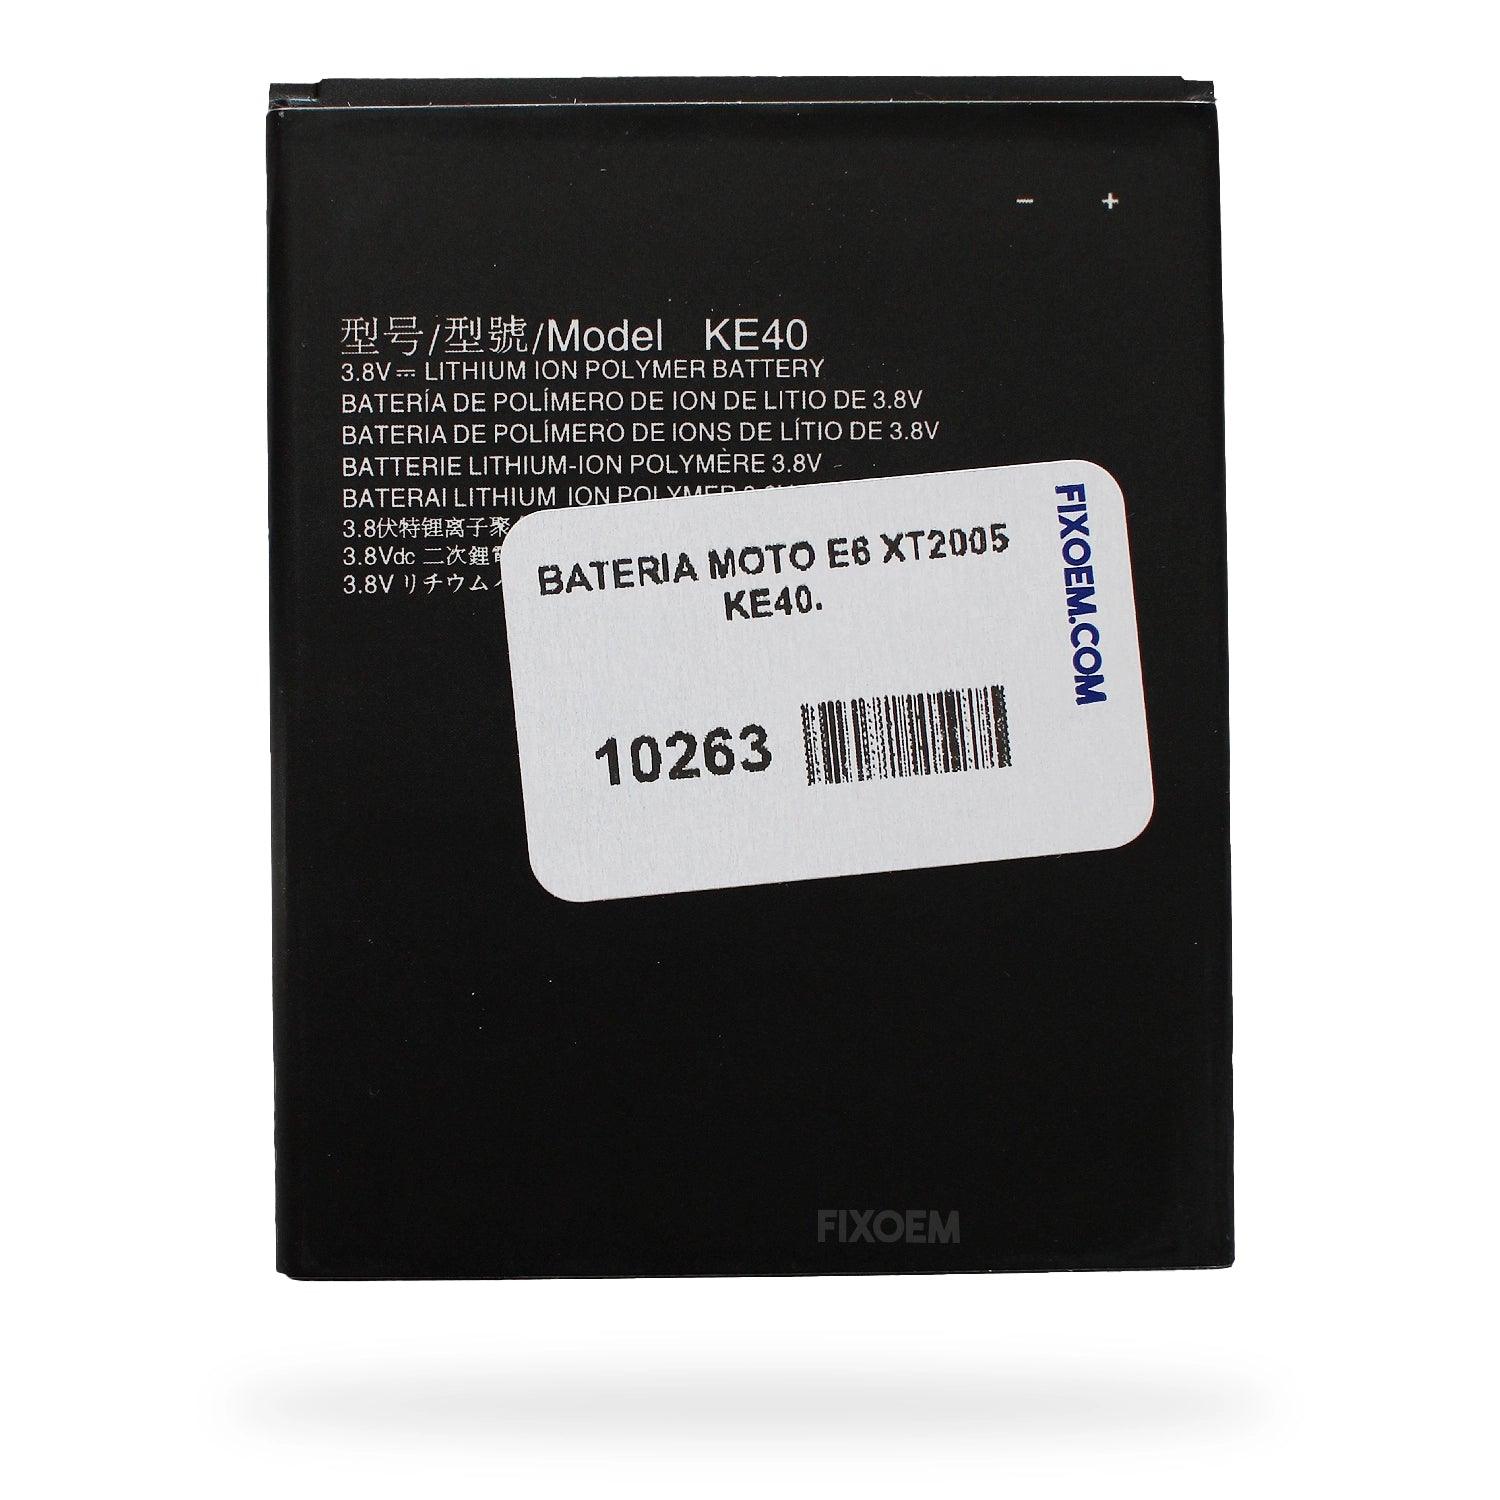 Bateria Moto E6 Xt2005 Ke40. a solo $ 100.00 Refaccion y puestos celulares, refurbish y microelectronica.- FixOEM